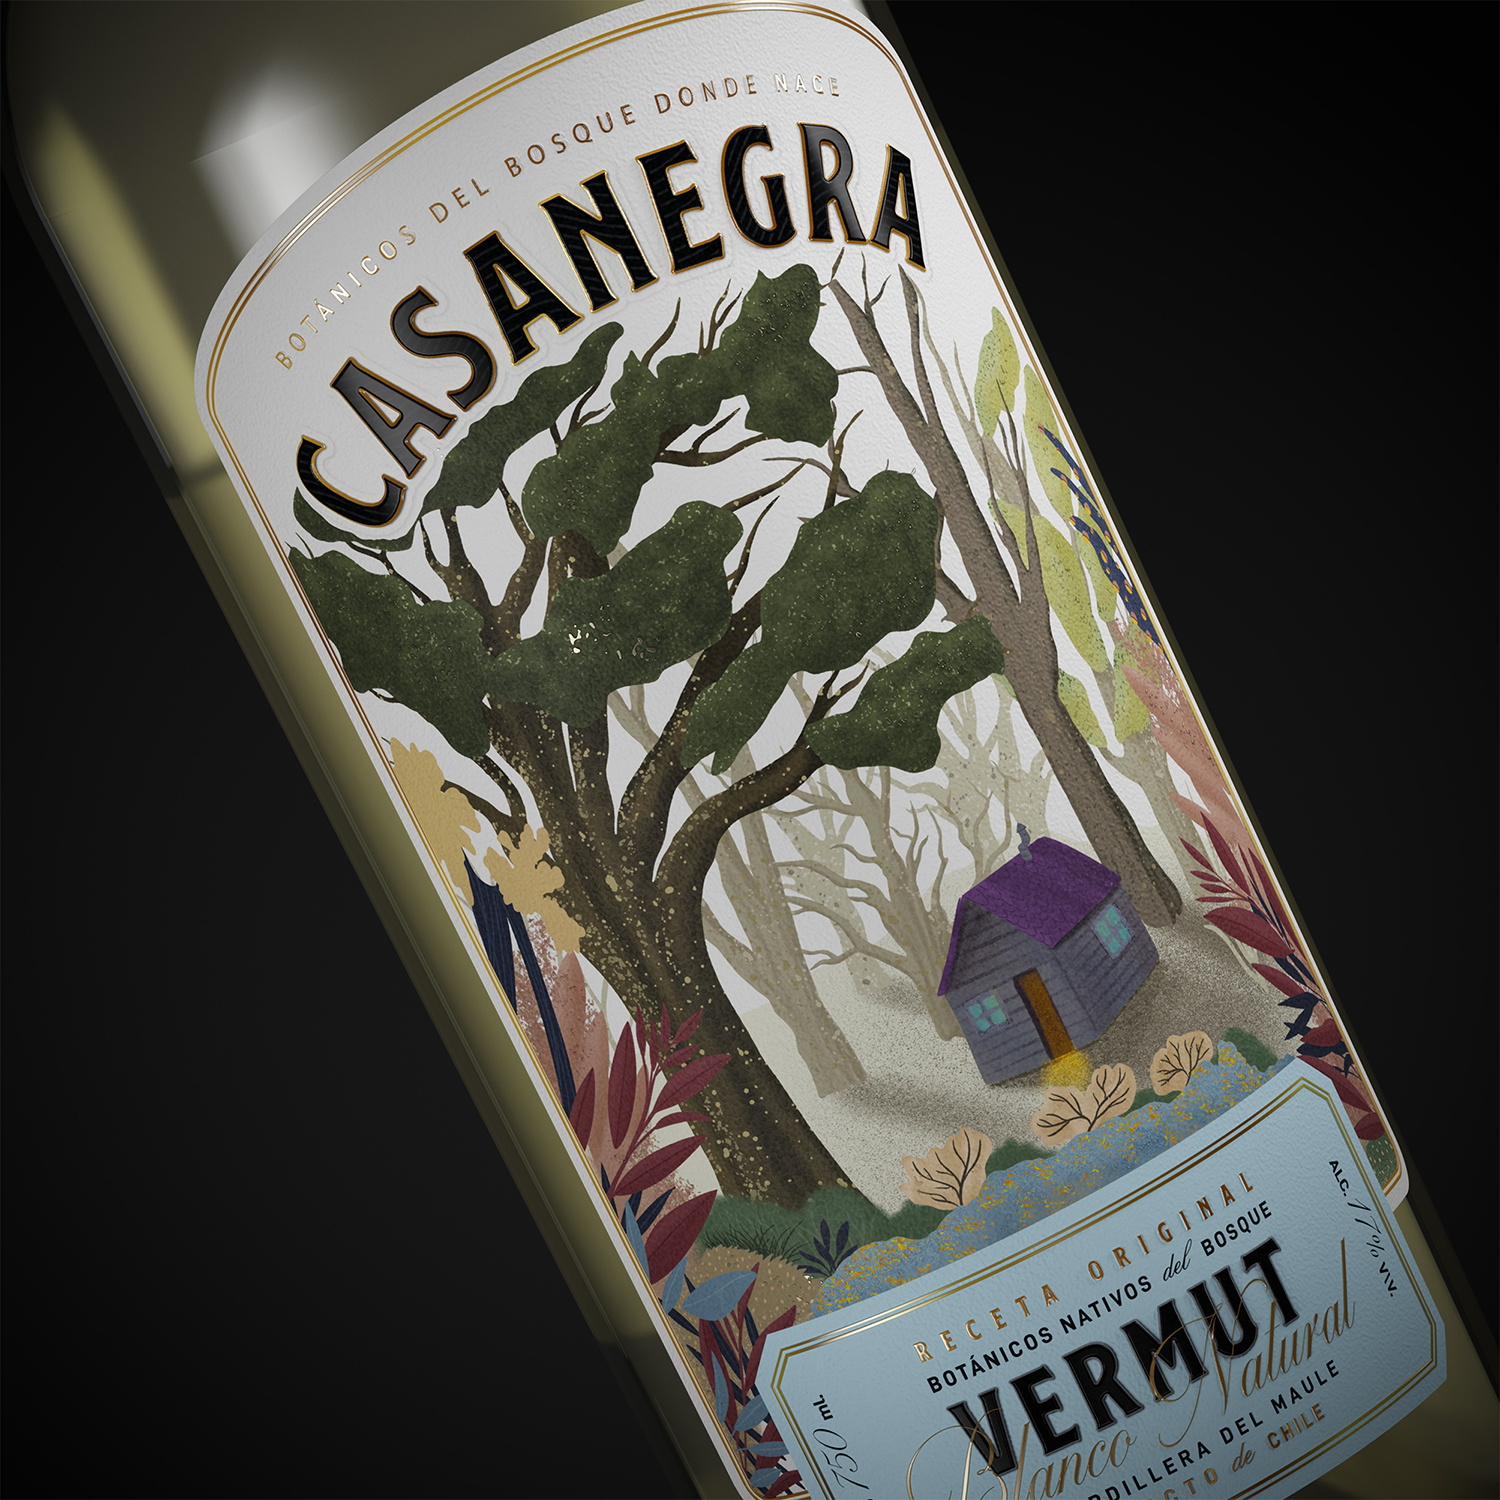 Casanegra Vermut Label Design by Zig Design Studio